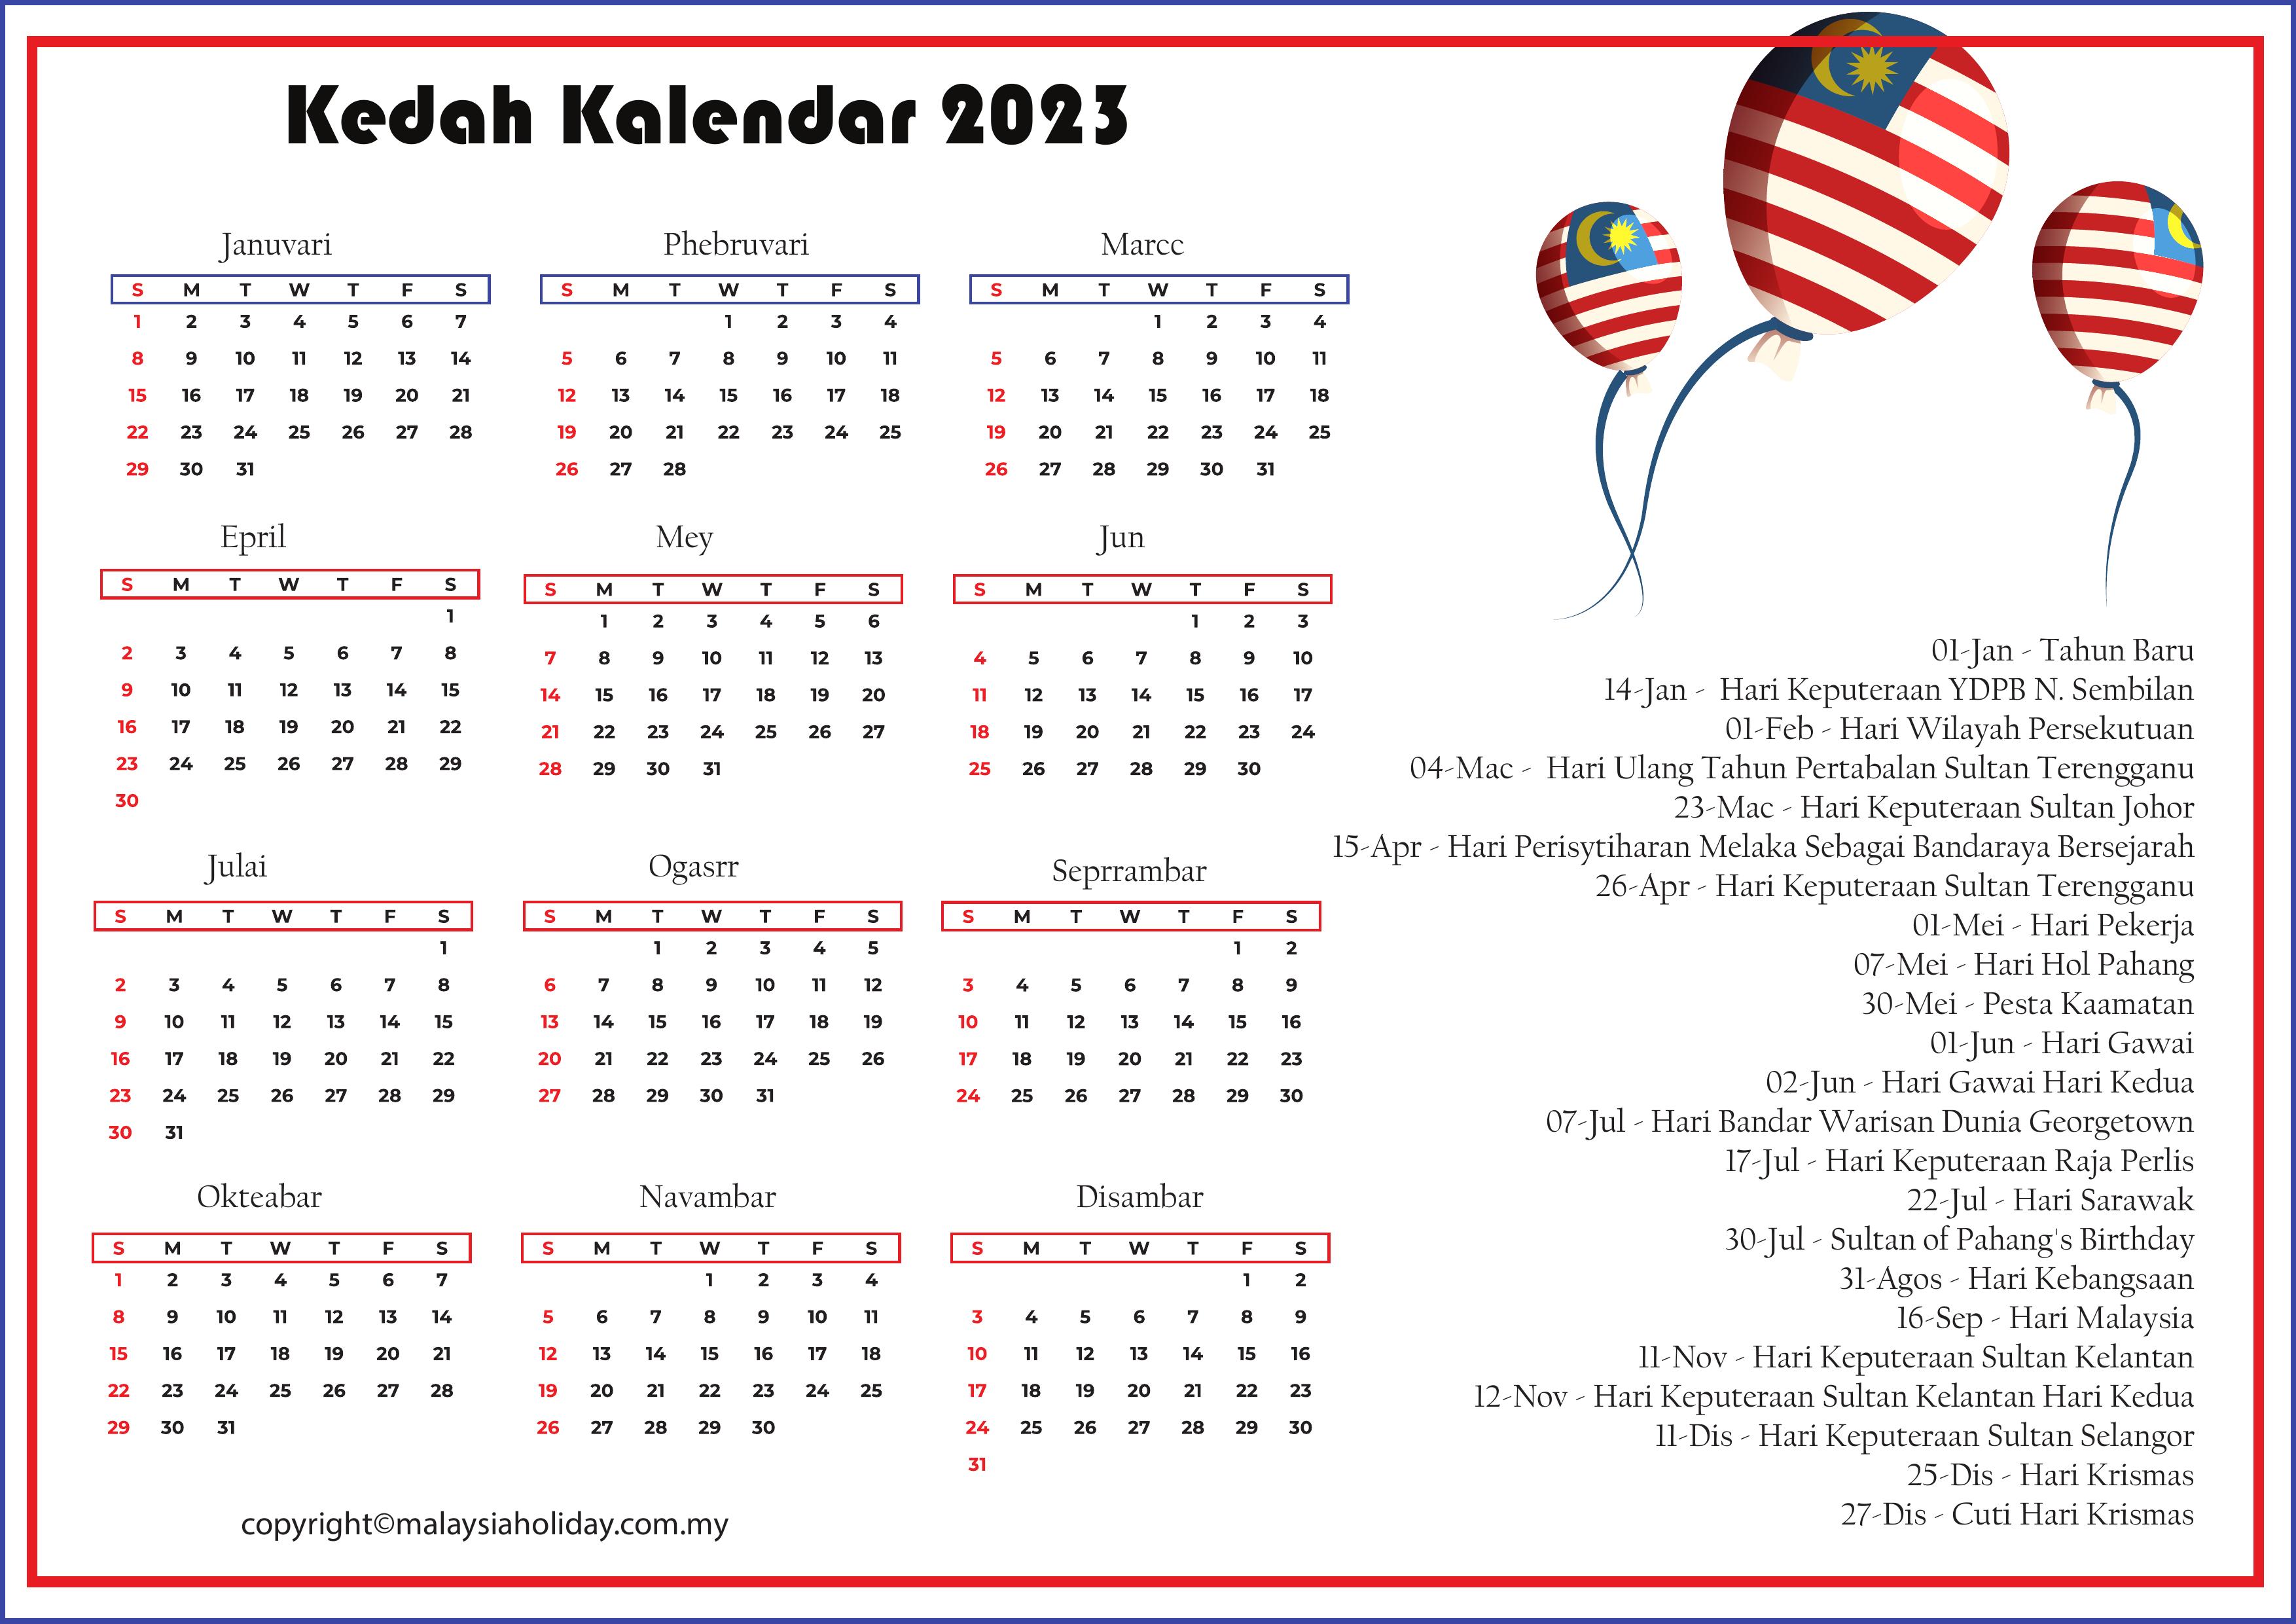 Kedah Cuti Umum 2023